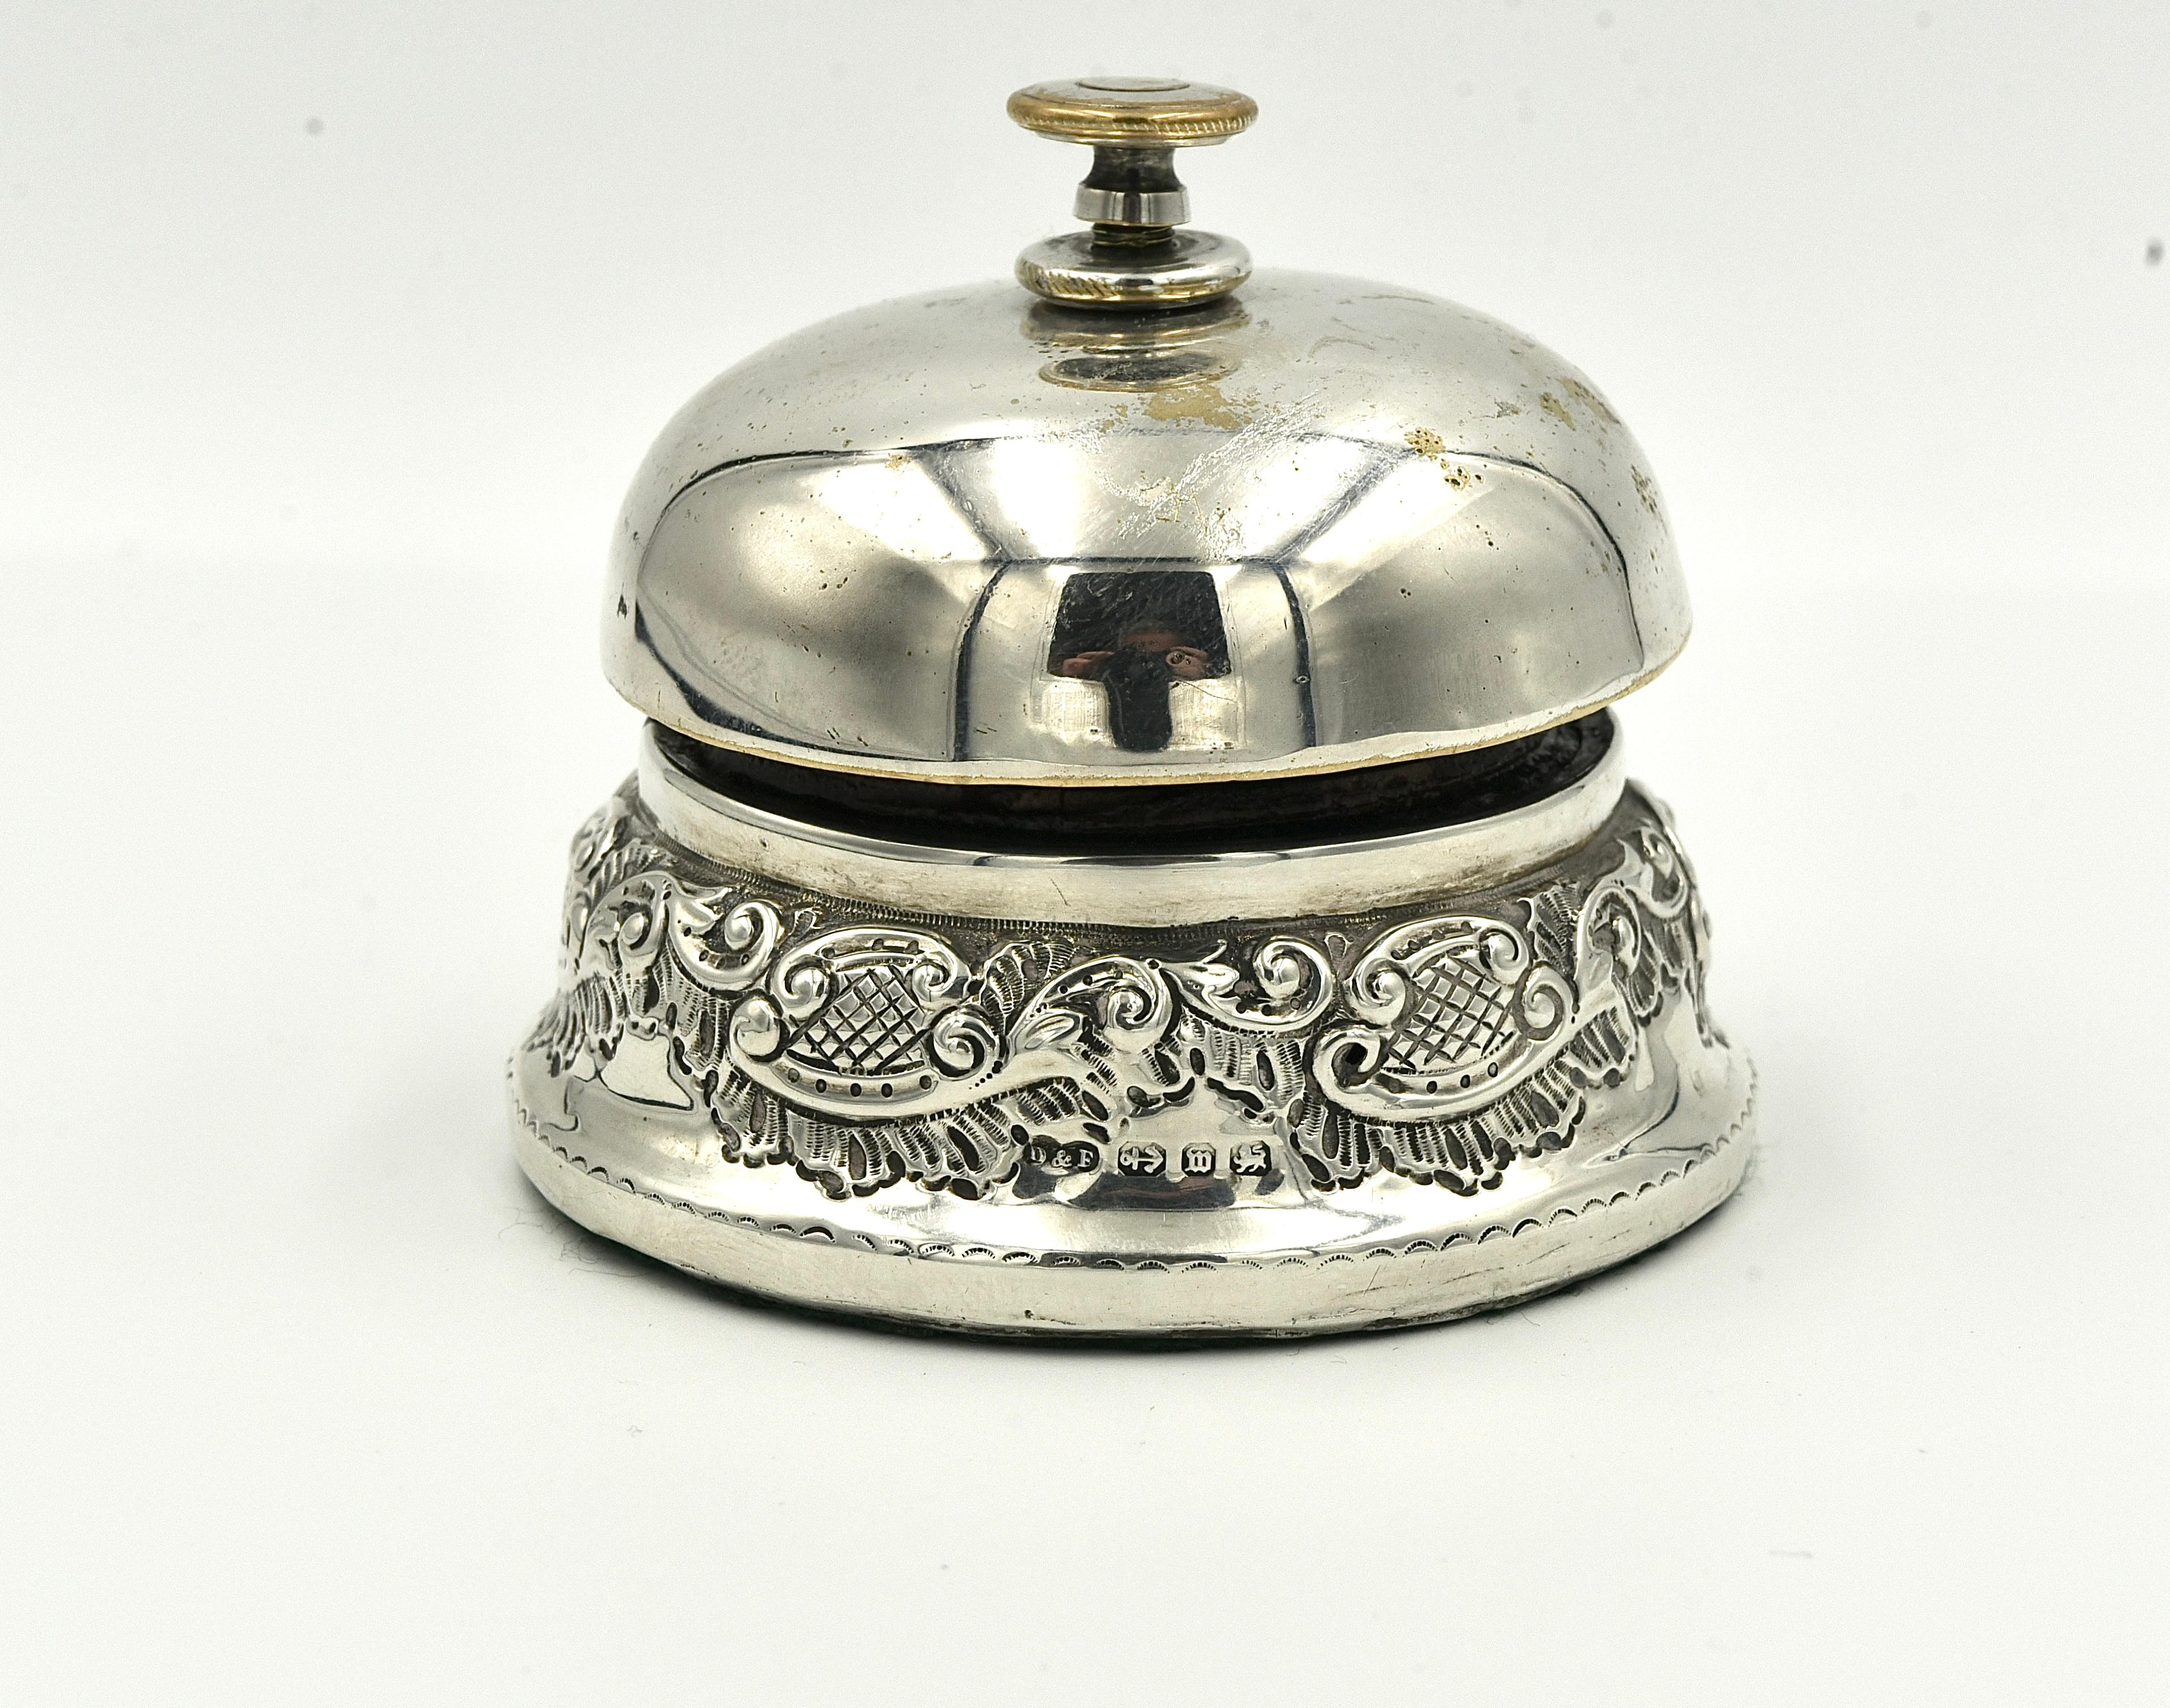 Seltene solide Silber Zähler Empfang Bell Turn Mechanismus gestempelt Birmingham Deakin Fracis 1886.

Massiver Silbersockel, der obere Teil der Glocke ist aus Silberblech  Der obere Drehknopf ist versilbert und weist einige leichte Gebrauchsspuren